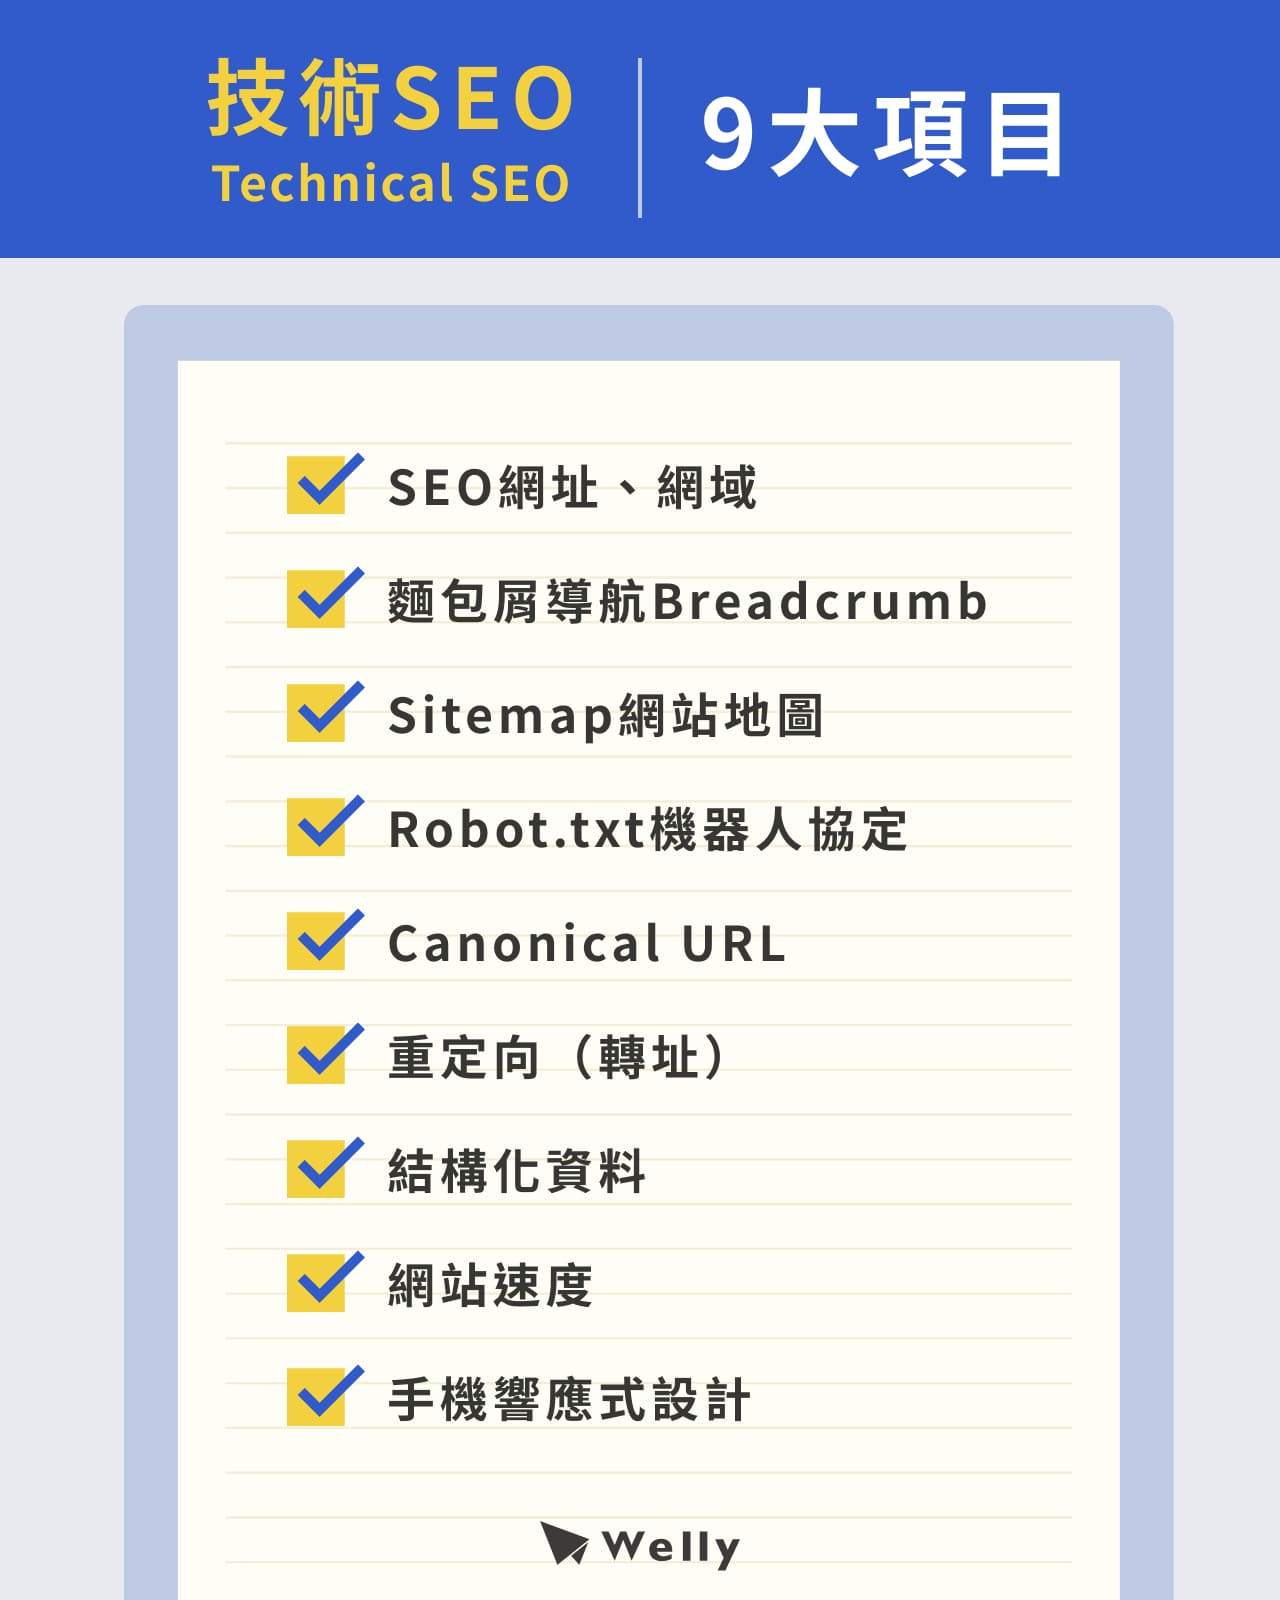 技術SEO（Technical SEO）9大項目：SEO網址／網域、麵包屑導航Breadcrumb、Sitemap網站地圖、Robot.txt機器人協定、Canonical URL、重定向（轉址）、結構化資料、網站速度、手機響應式設計